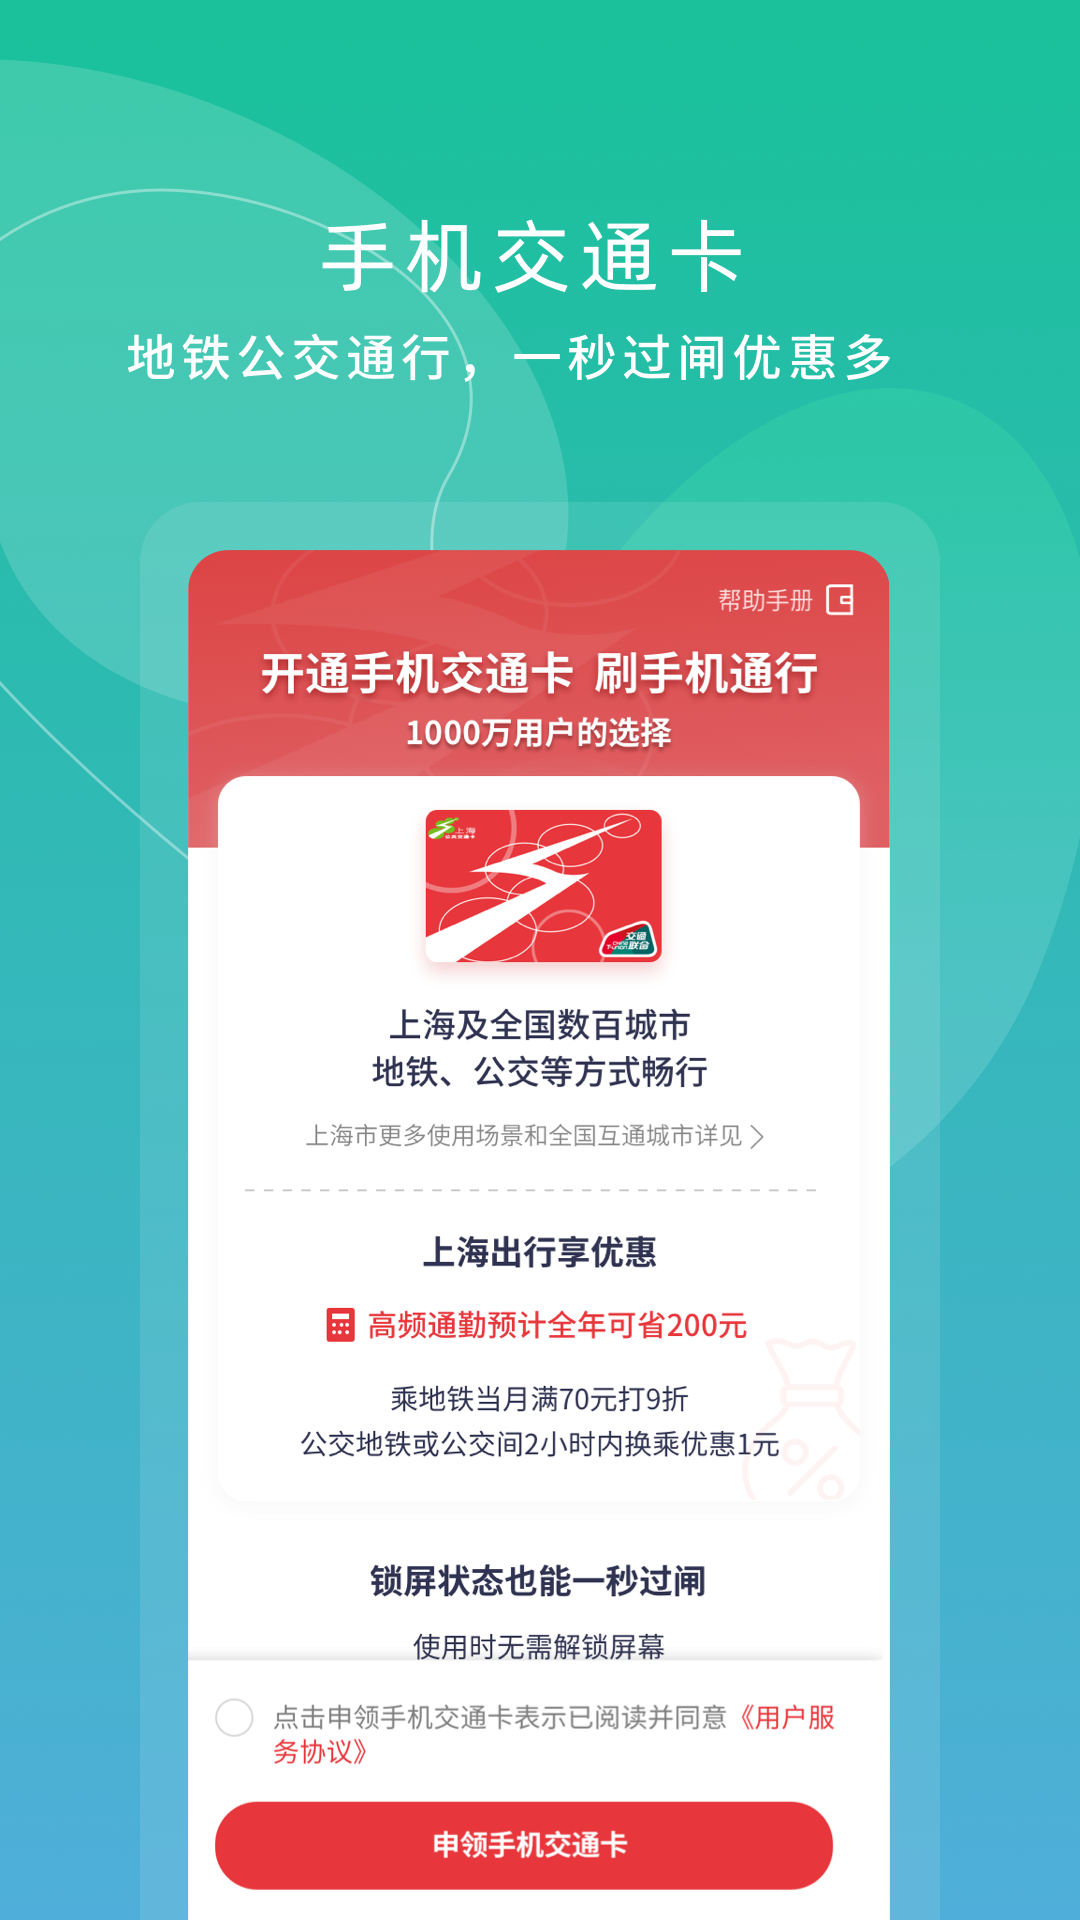 上海交通卡app下载